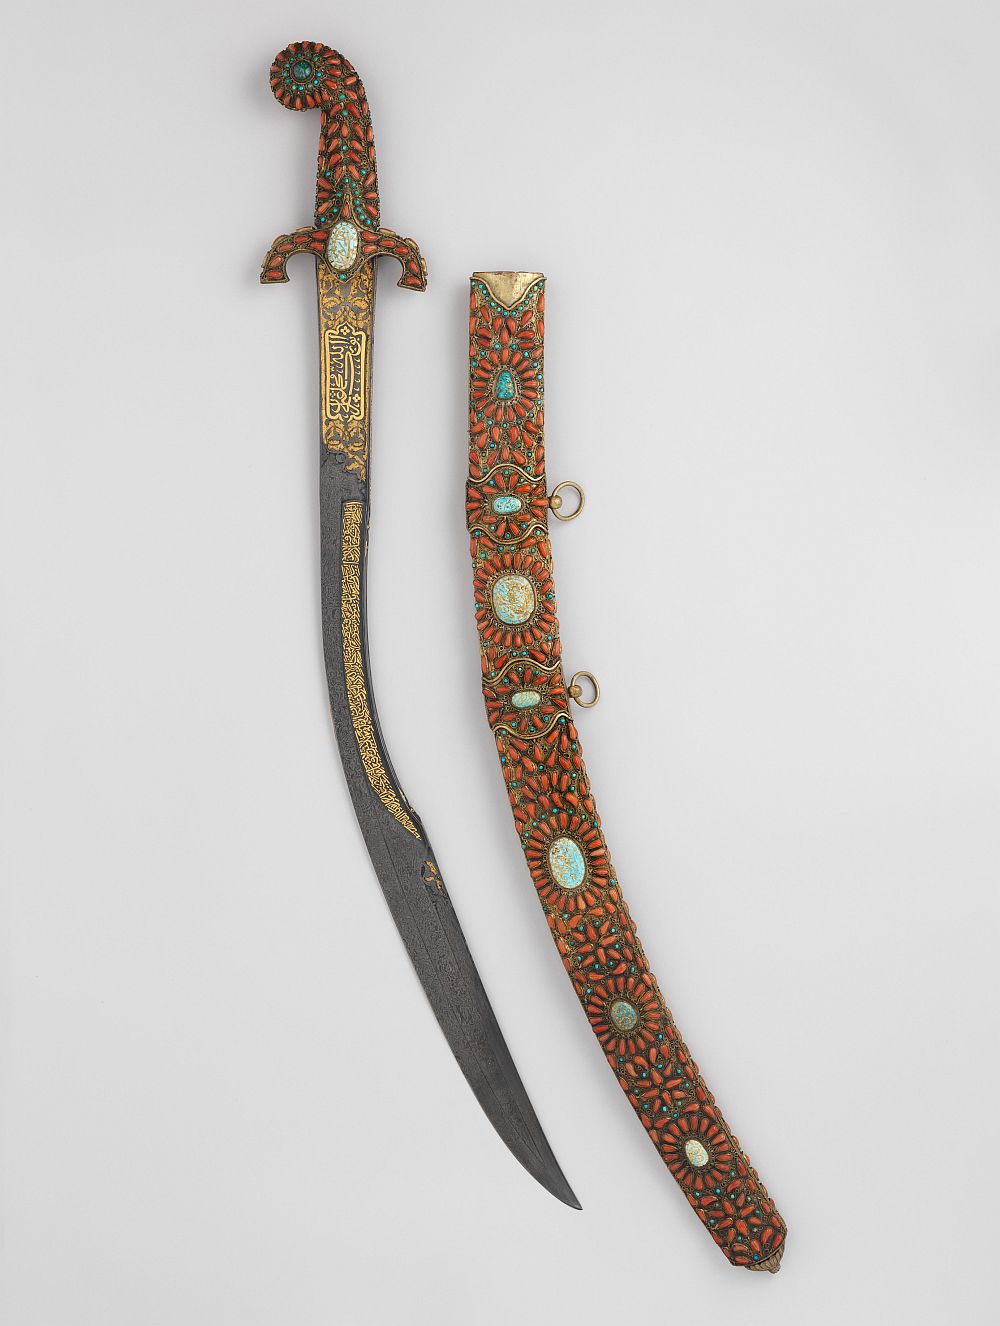 Arap kılıcı